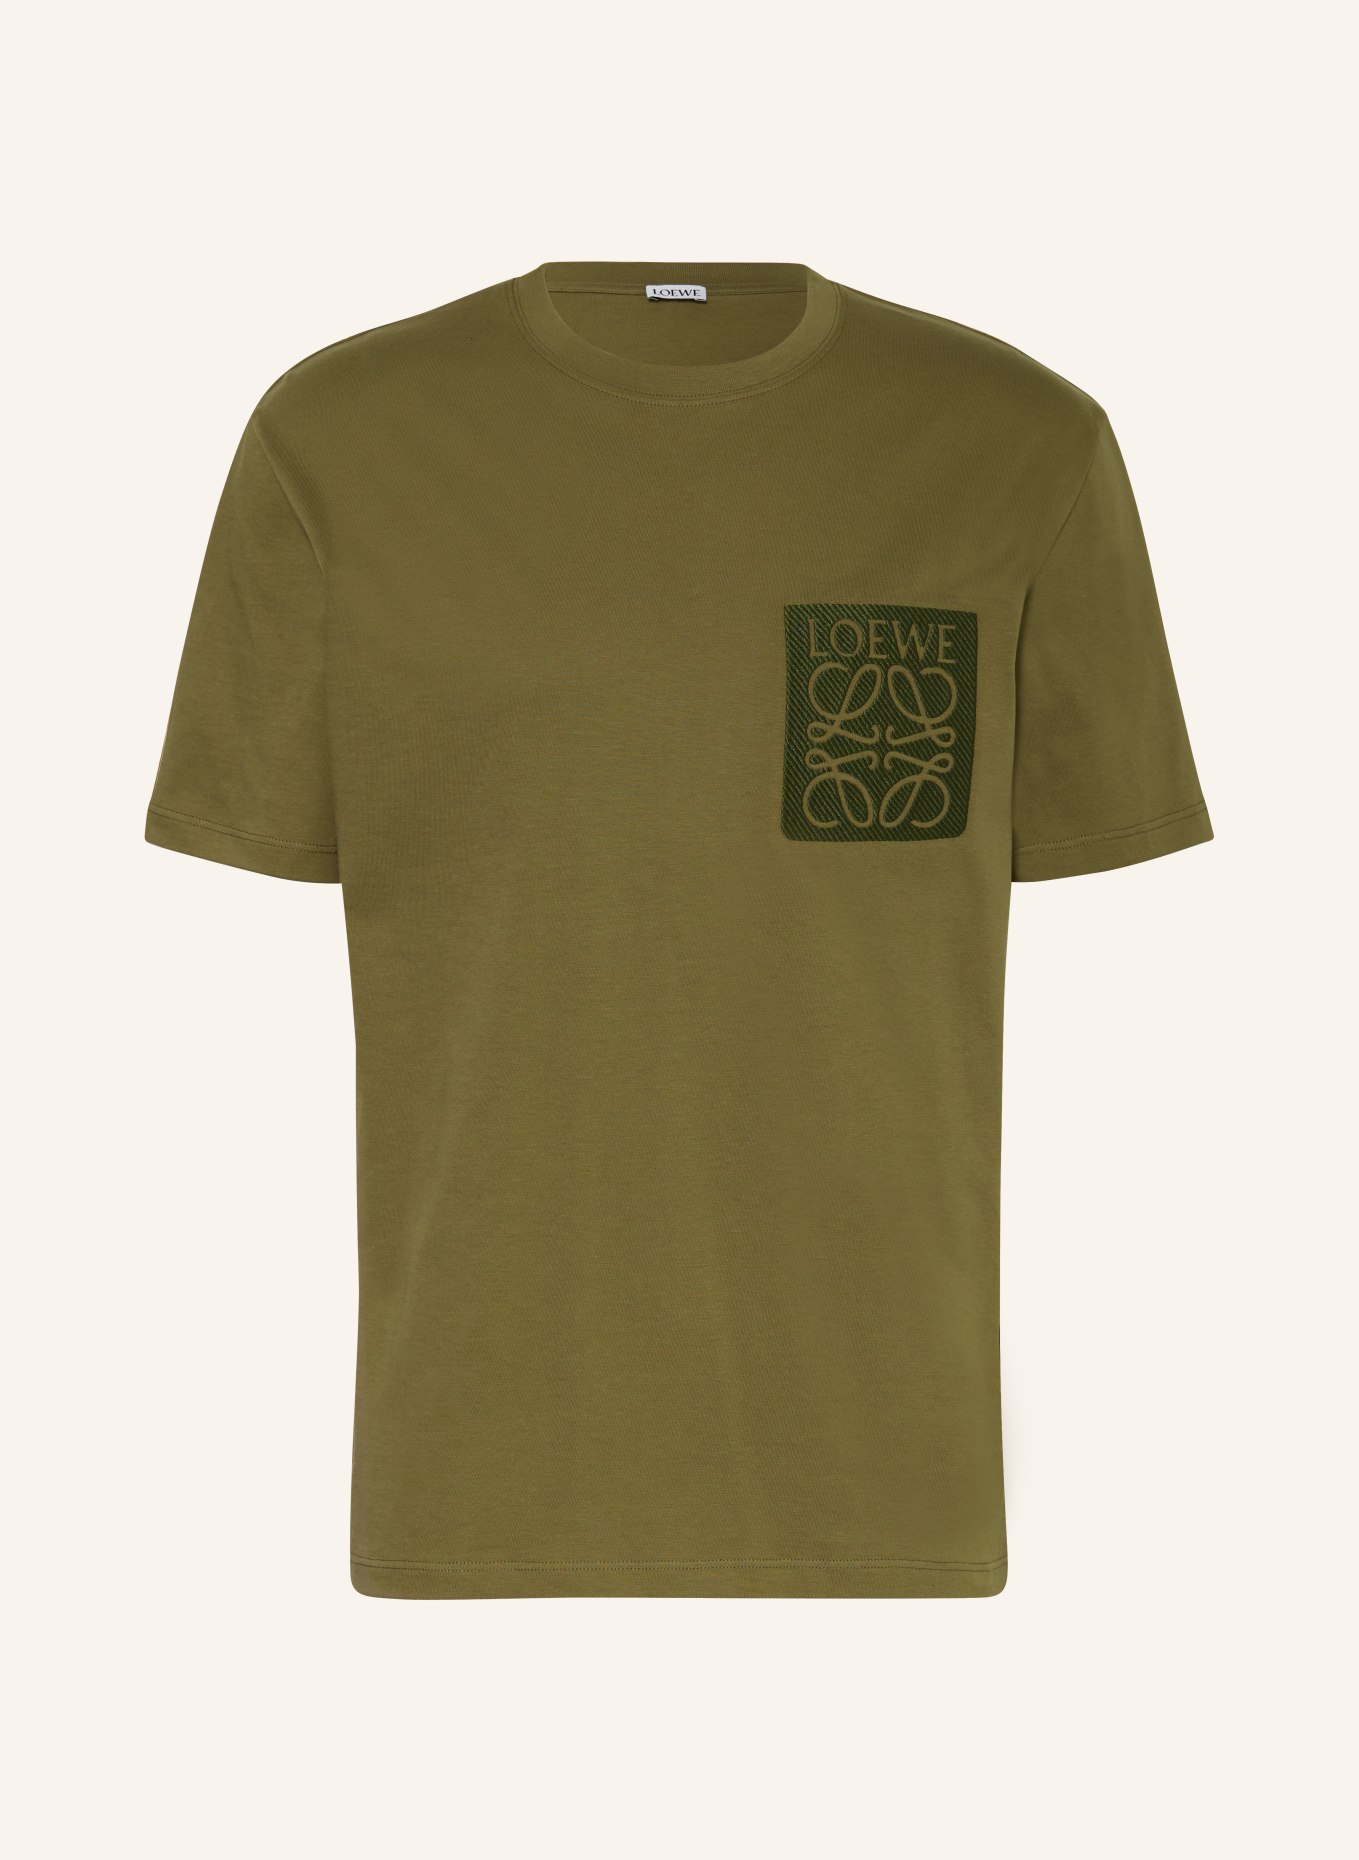 LOEWE T-shirt, Color: OLIVE (Image 1)